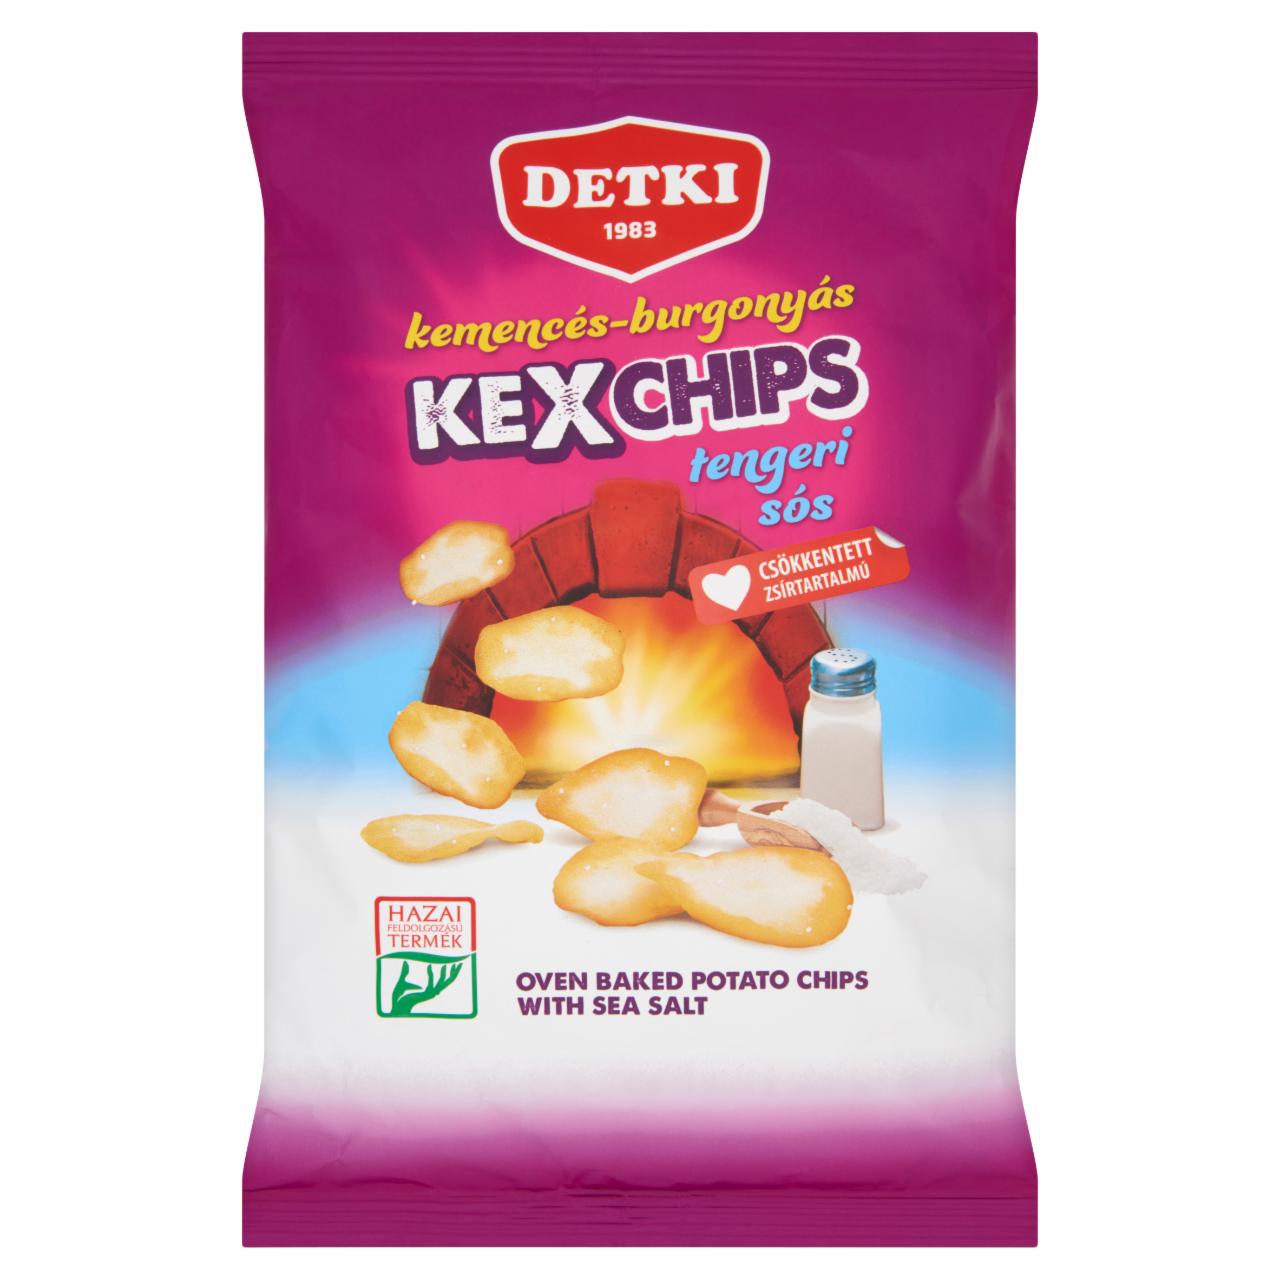 Képek - Detki Kexchips tengeri sós kemencés-burgonyás chips 75 g